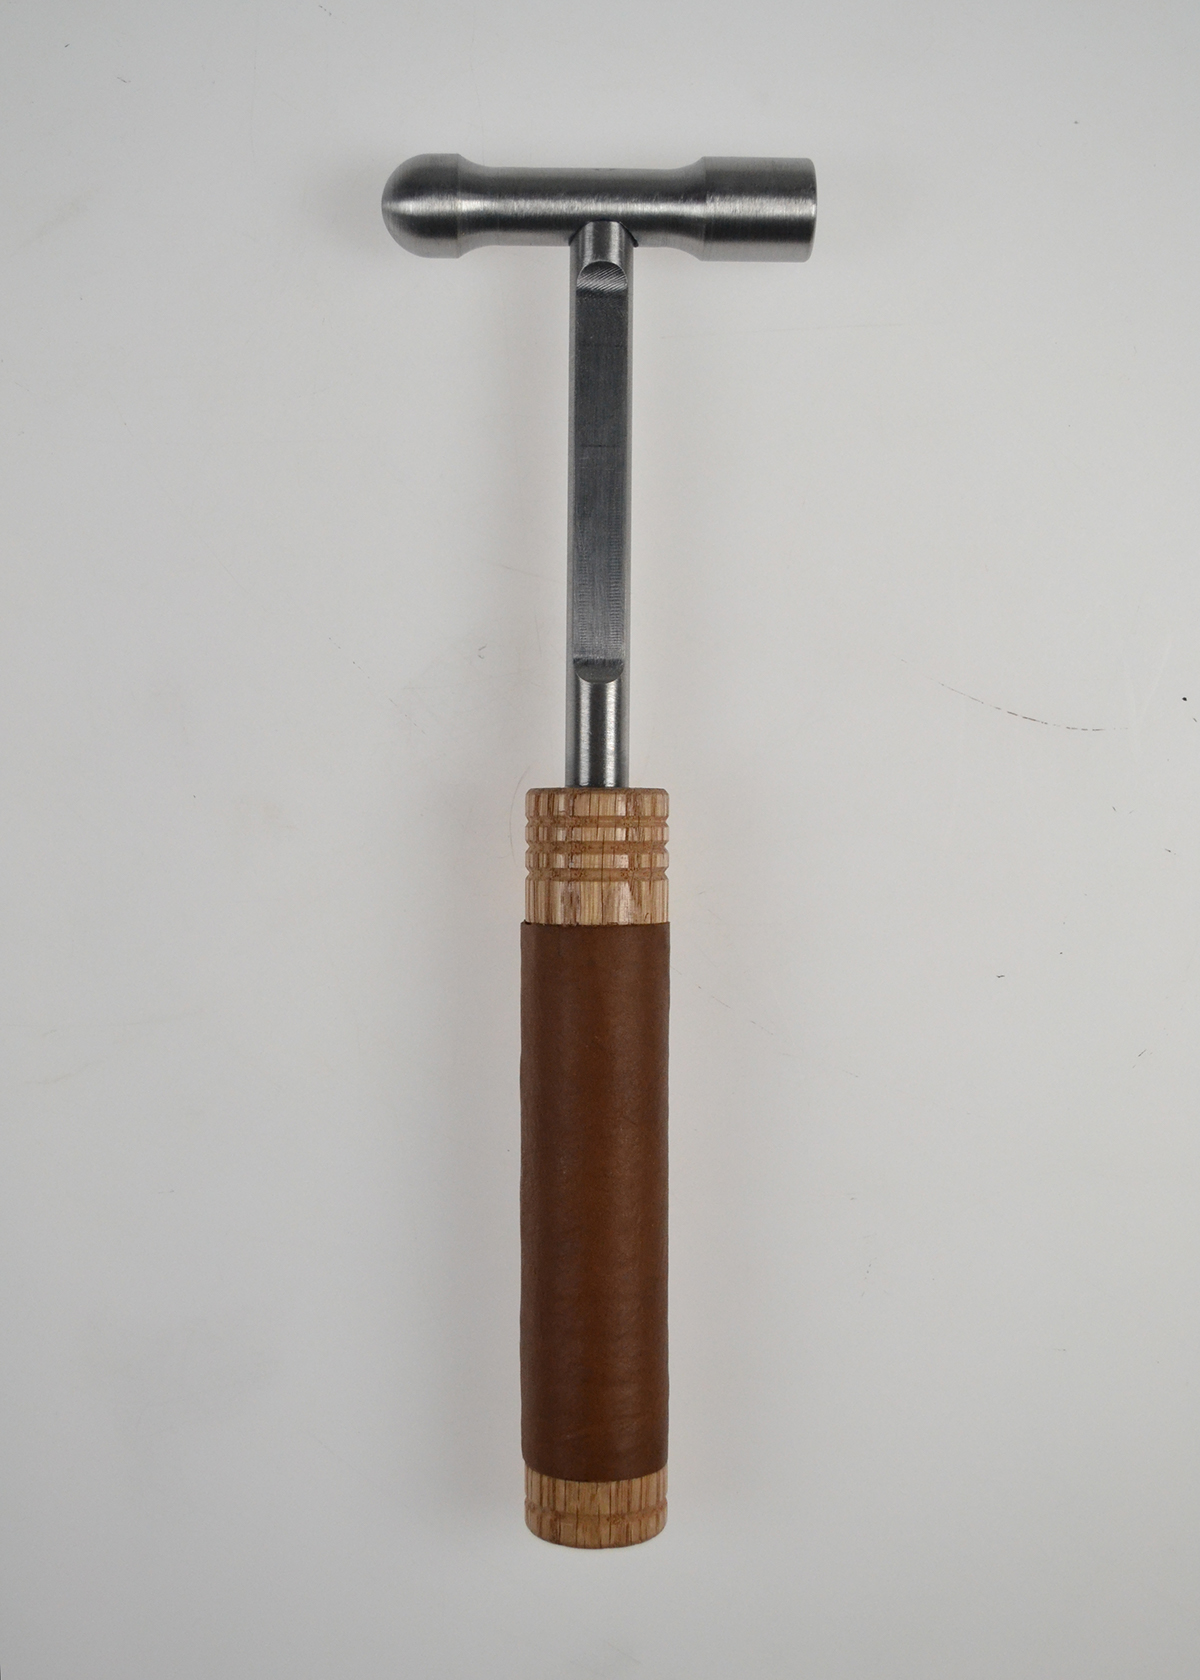 hammer ball peen steel oak leather wood tool